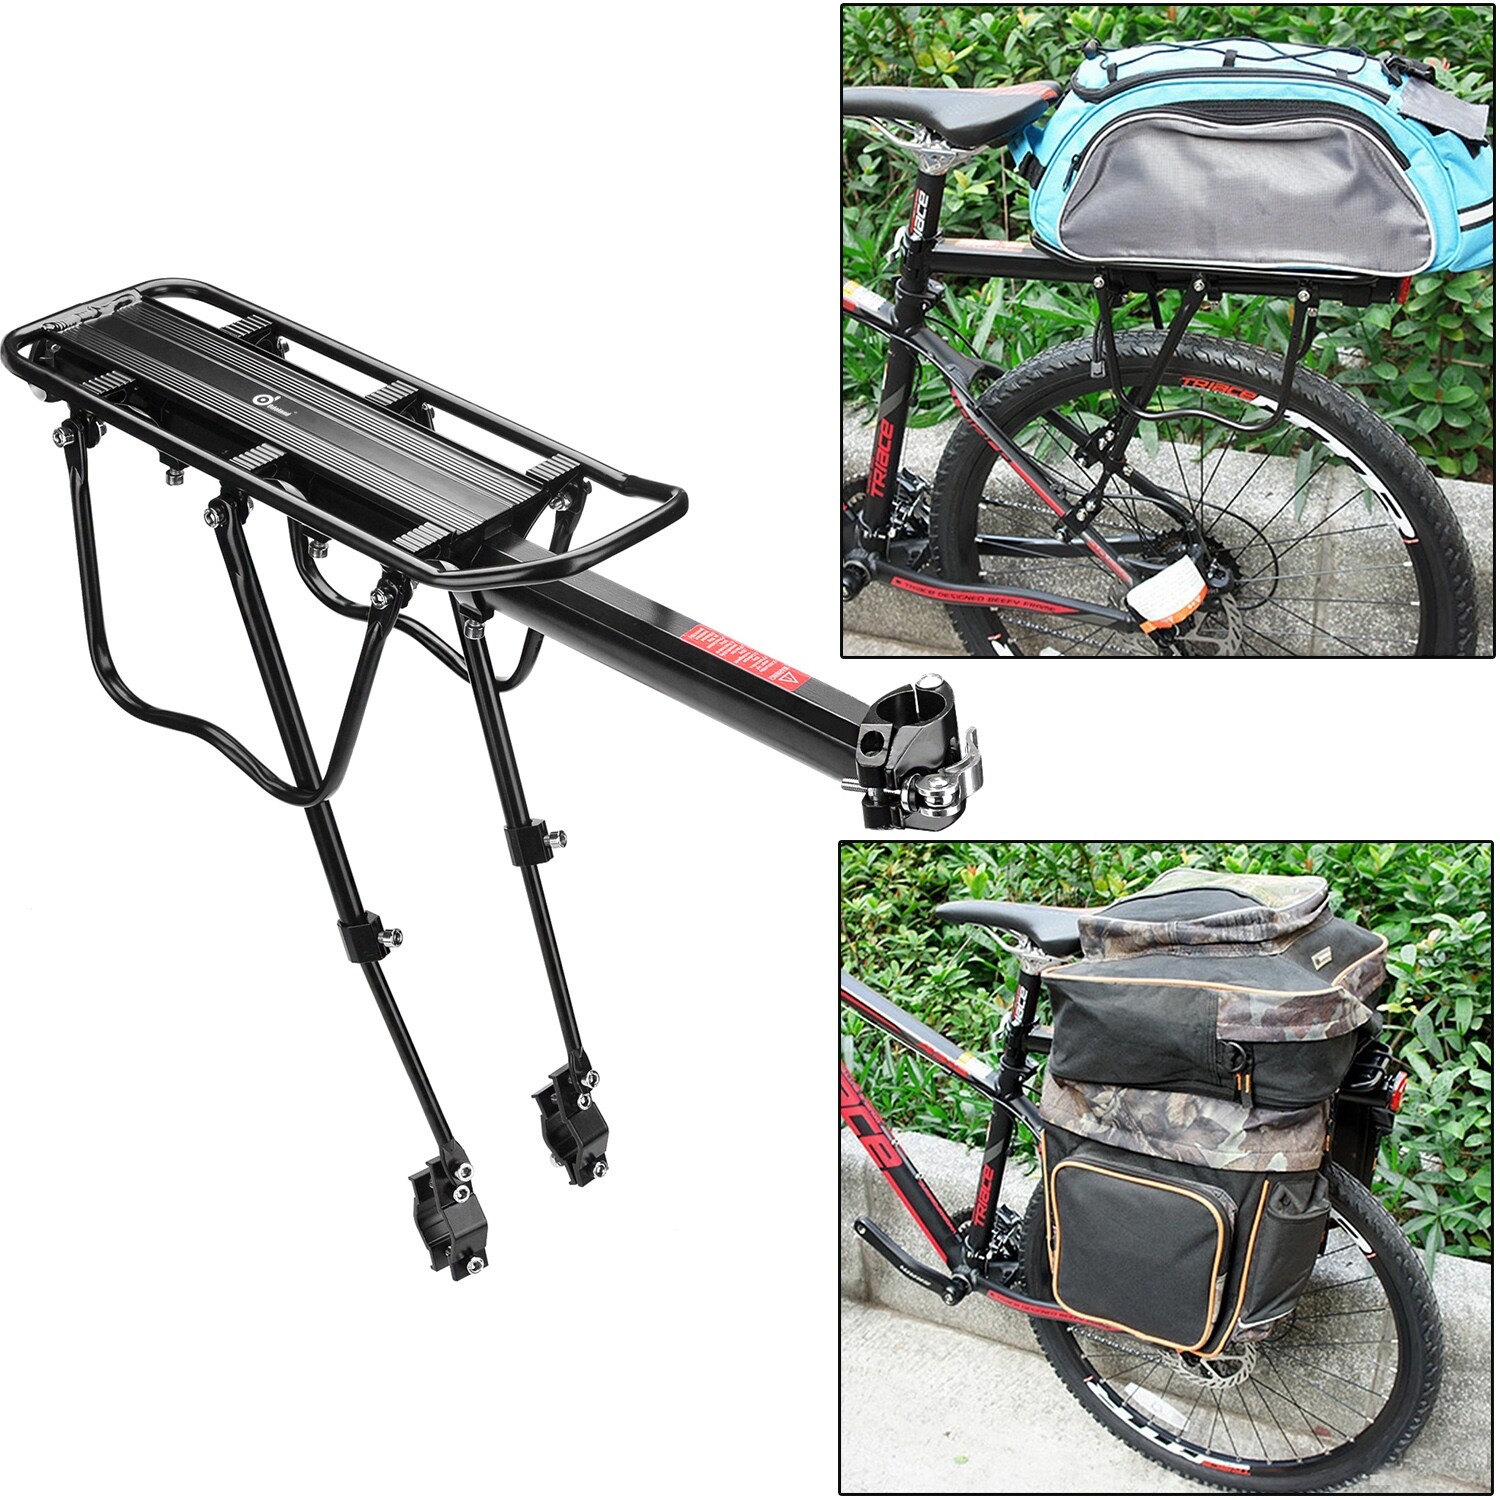 Передний багажник для велосипеда. Велобагажник Cycledesign багажник велосипедный Carrier Shield. Велобагажник Cycledesign багажник велосипедный Pannier Bag. Багажник для велосипеда format 7714. Кайлер карго велобагажник.